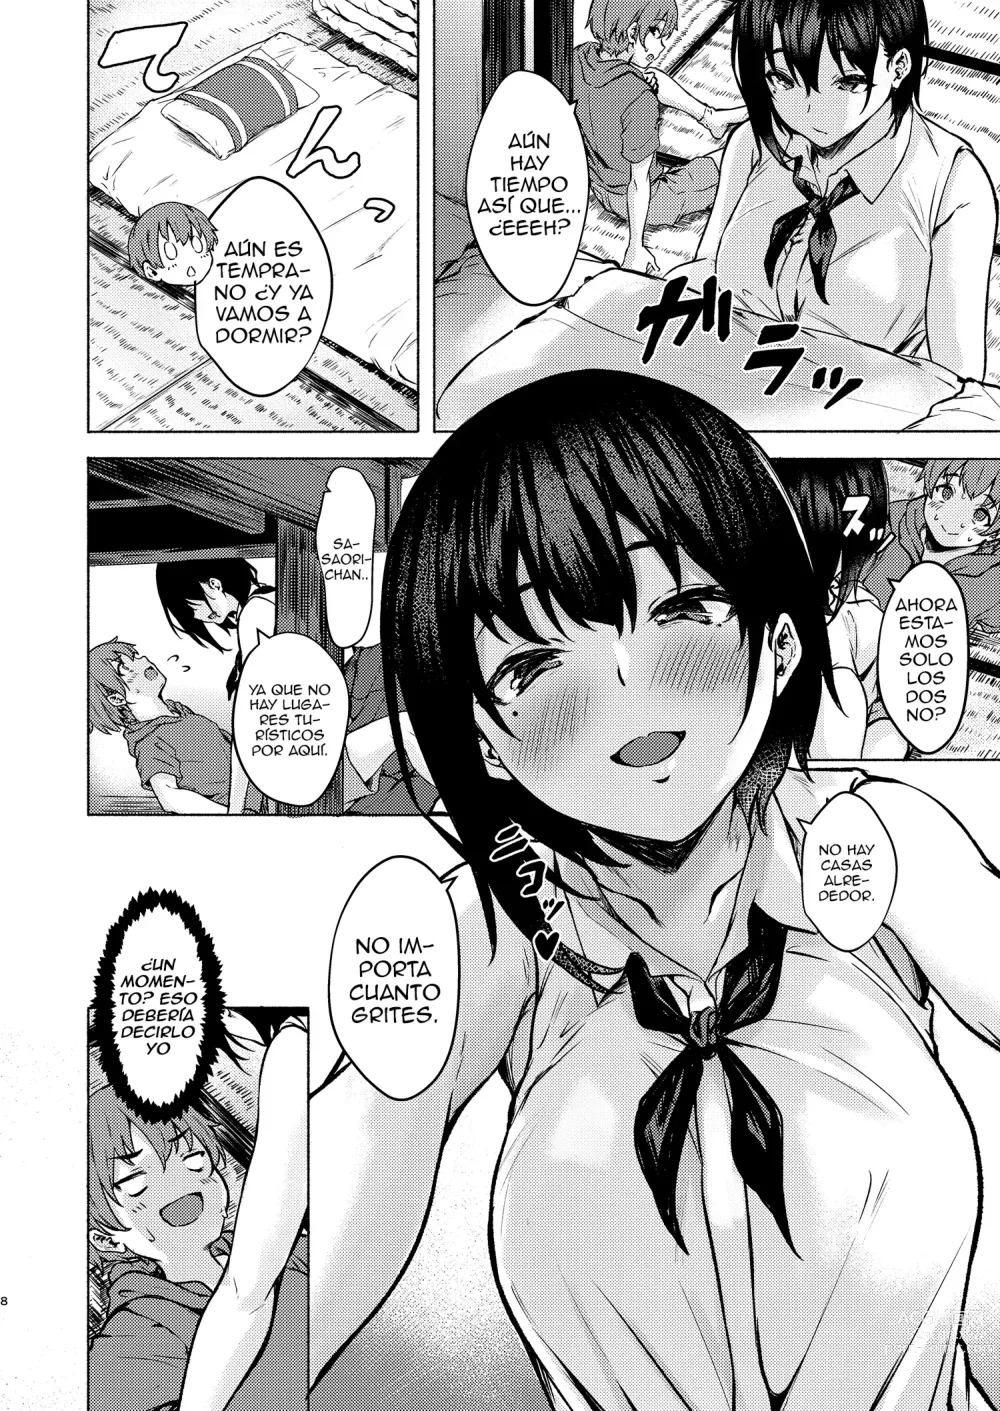 Page 9 of doujinshi Saori-chan es más grande, torpe y lasciva